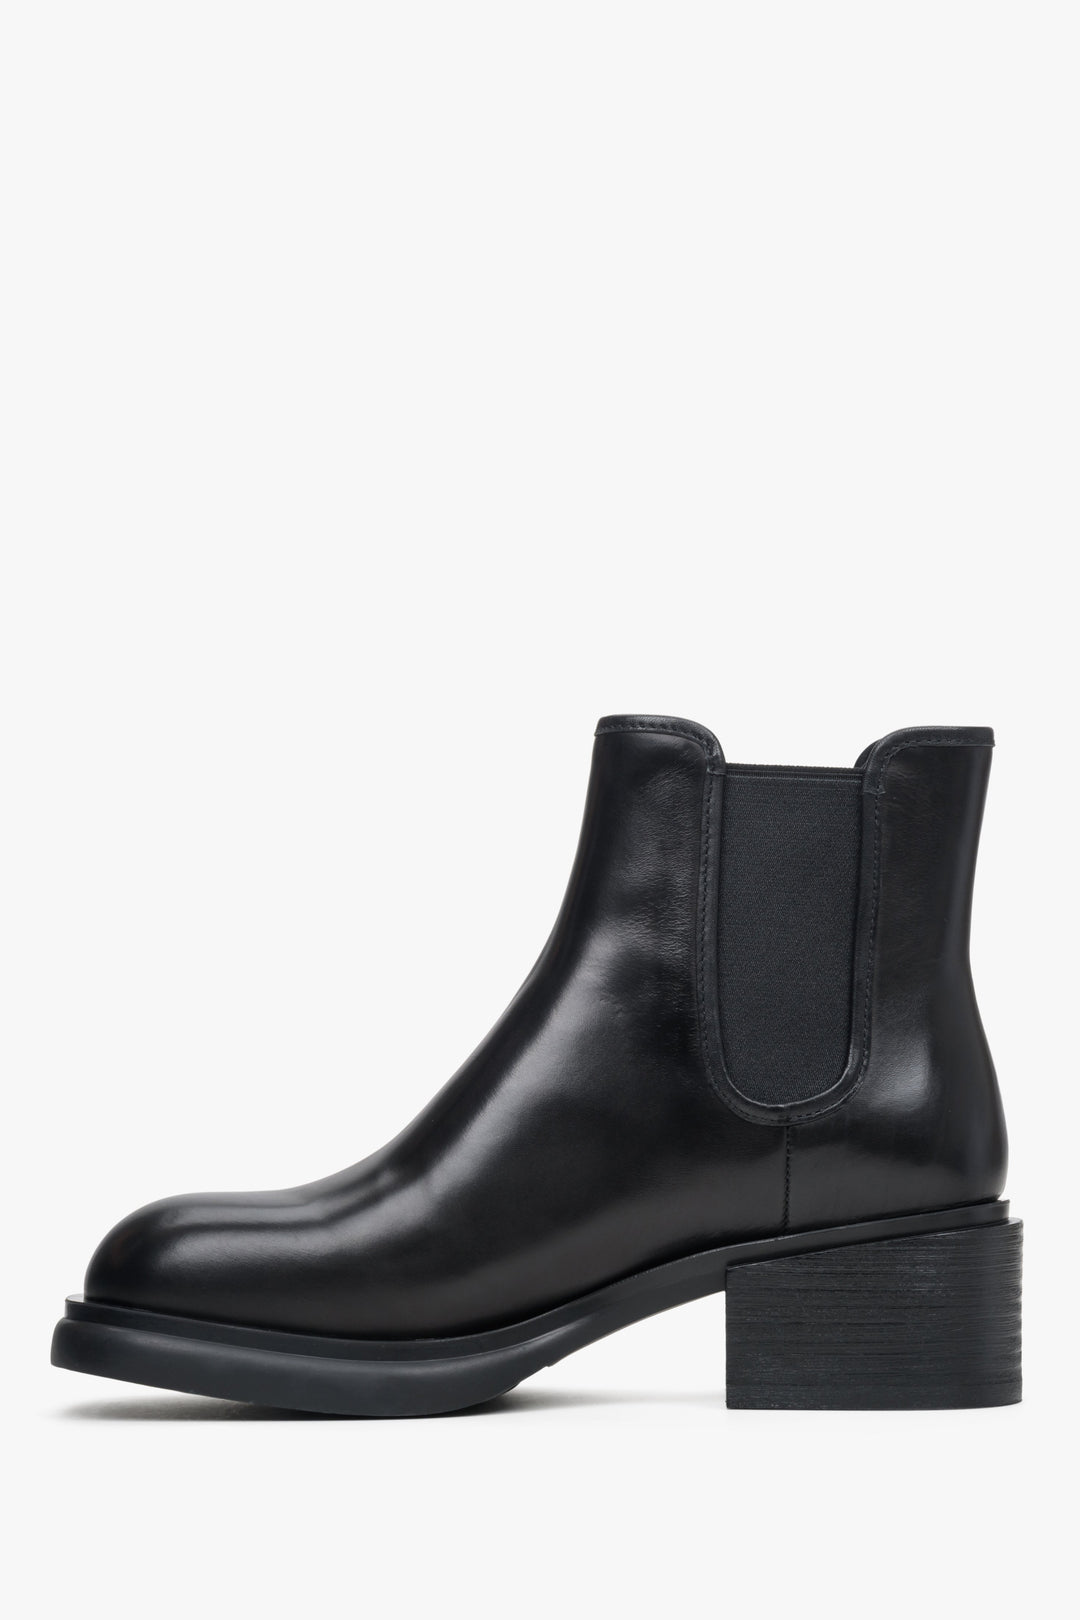 Women's black ankle boots Estro - shoe profile.